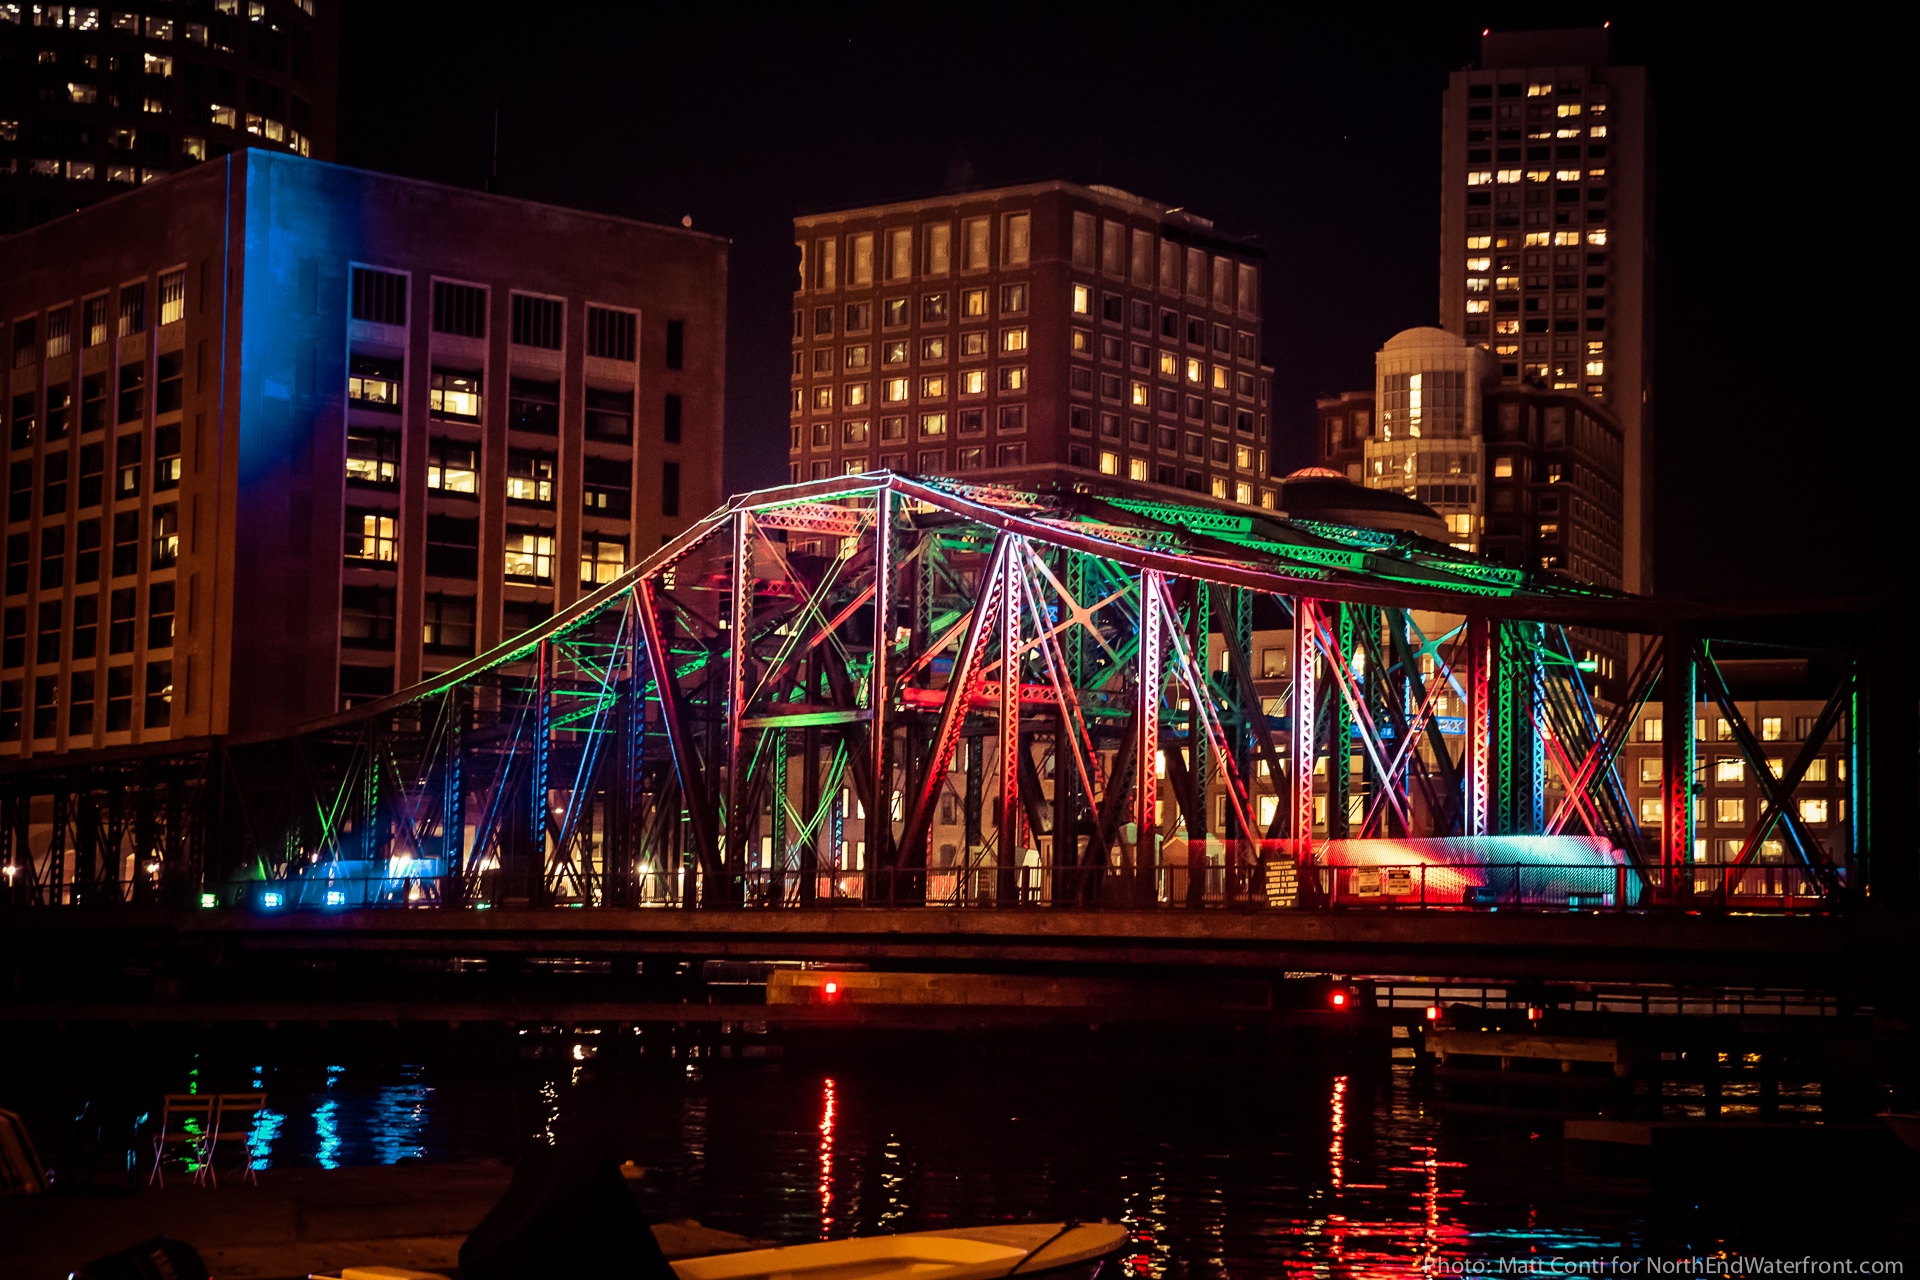 Old Northern Ave Bridge Gets Splash of Color